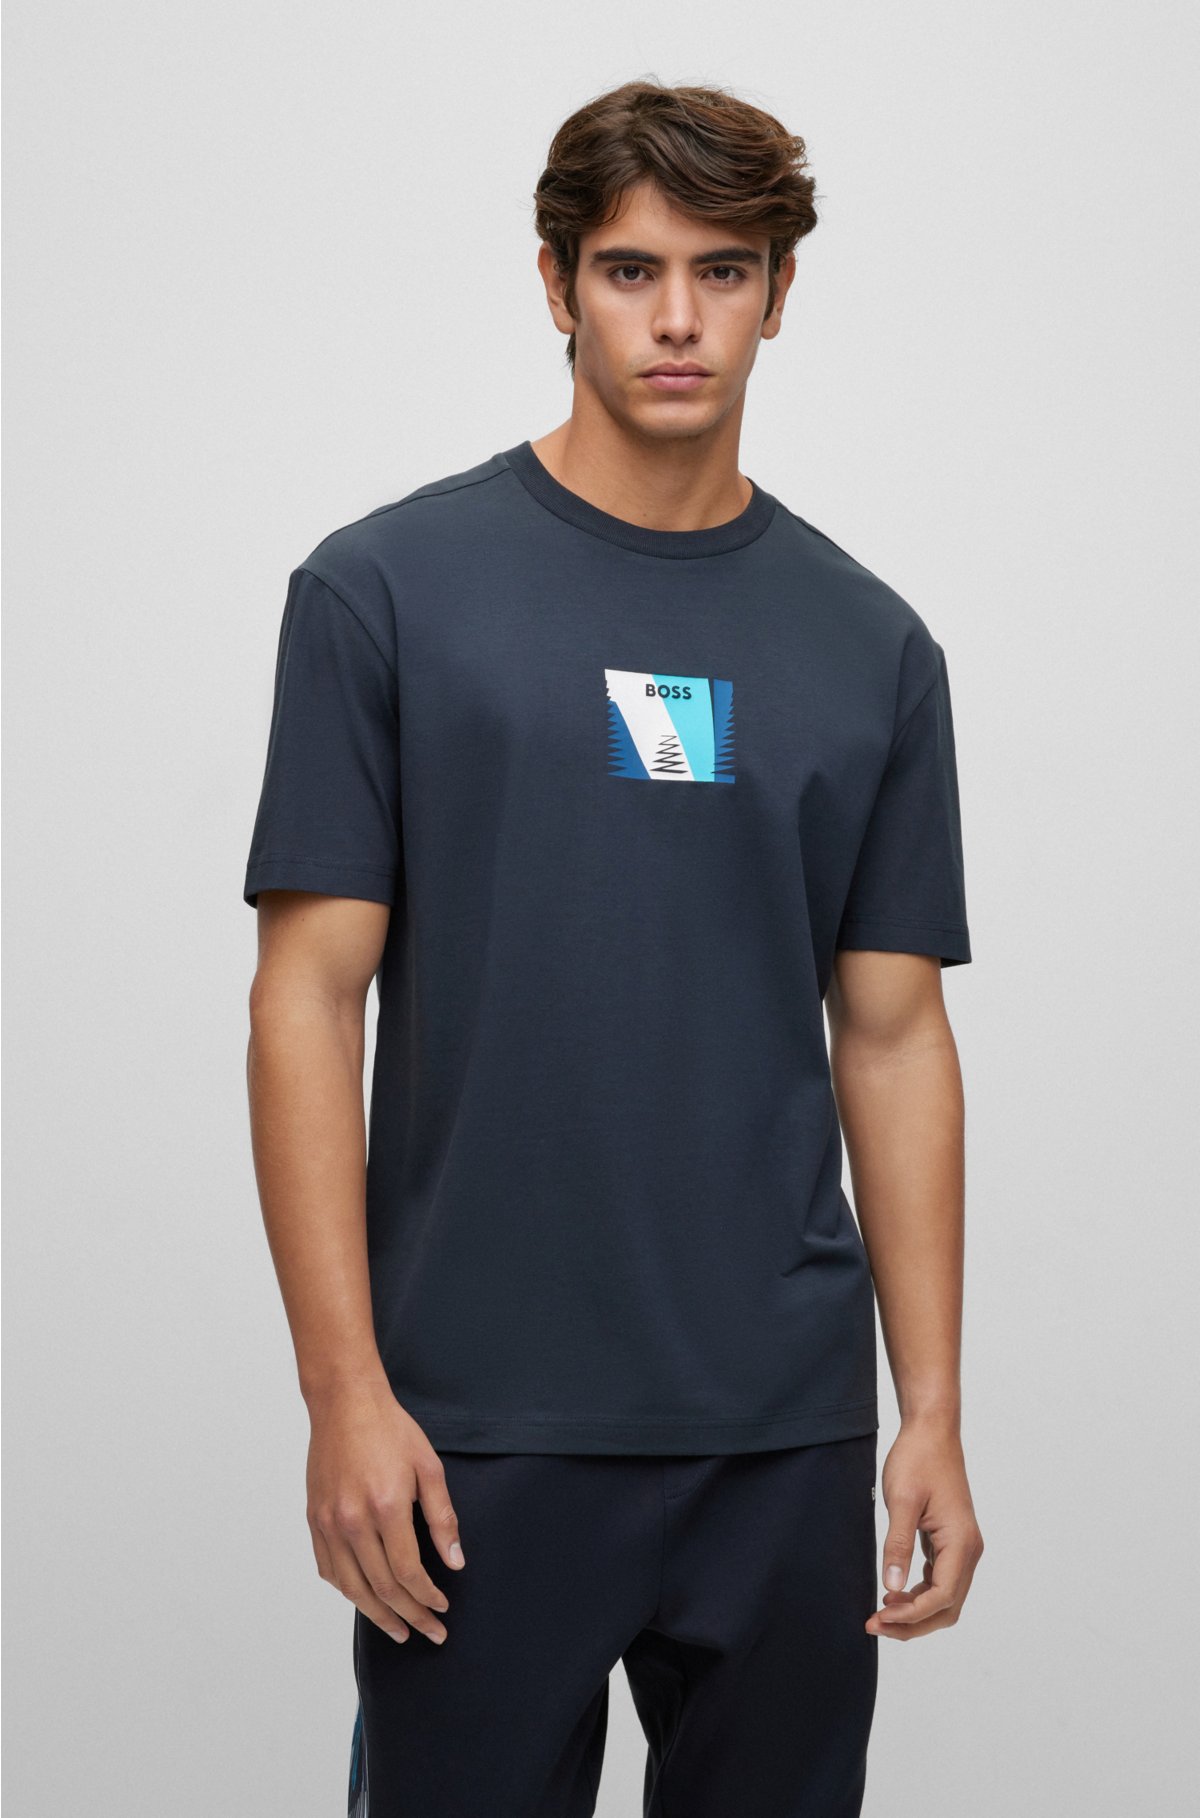 ALTERD x LOUIS VUITTON Monogram Short Sleeve Pocket T-shirt